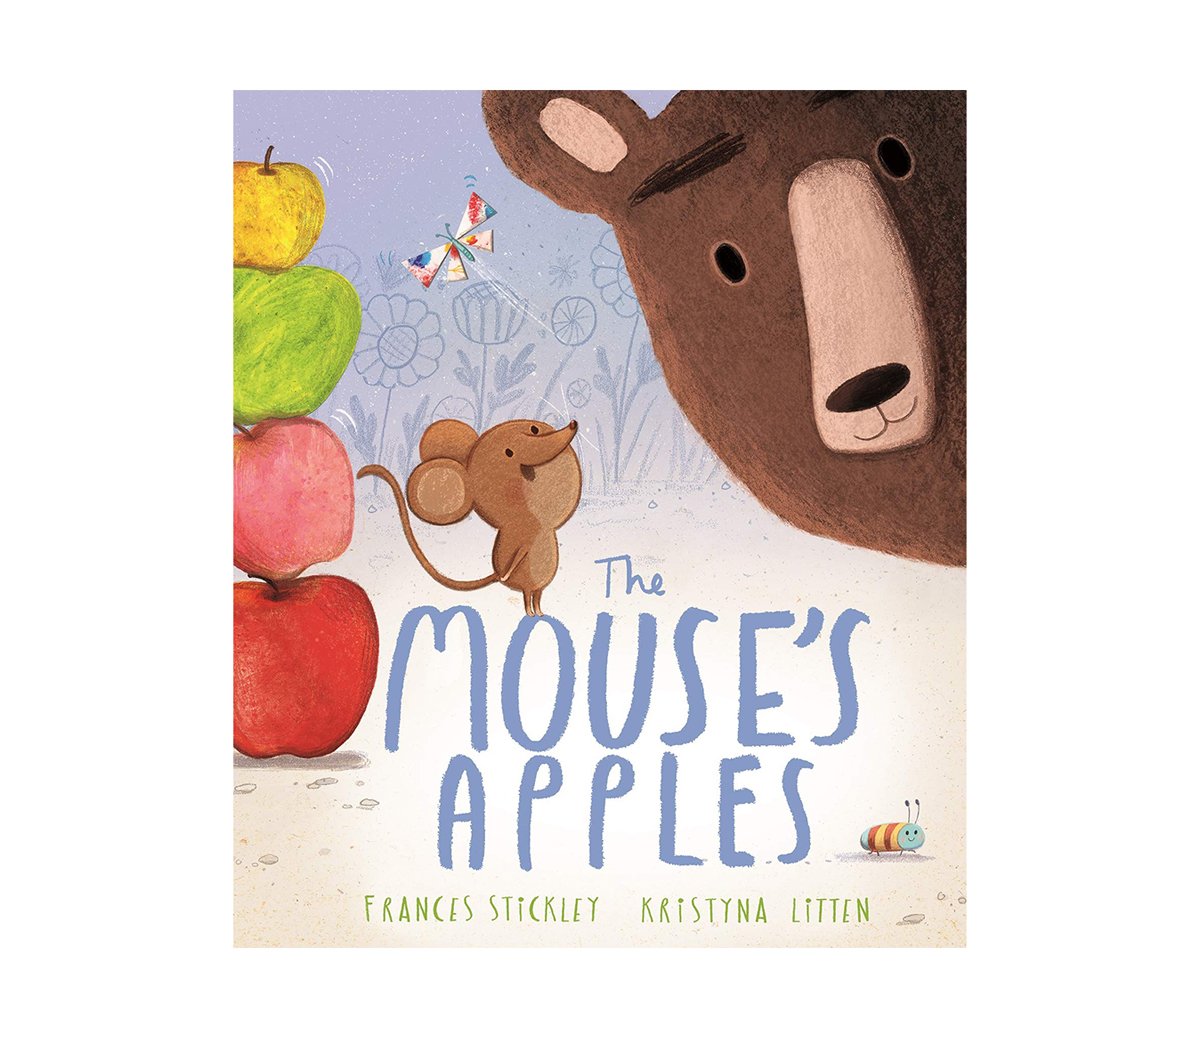 fran-stickley-the-mouses-apples-illustration.jpg